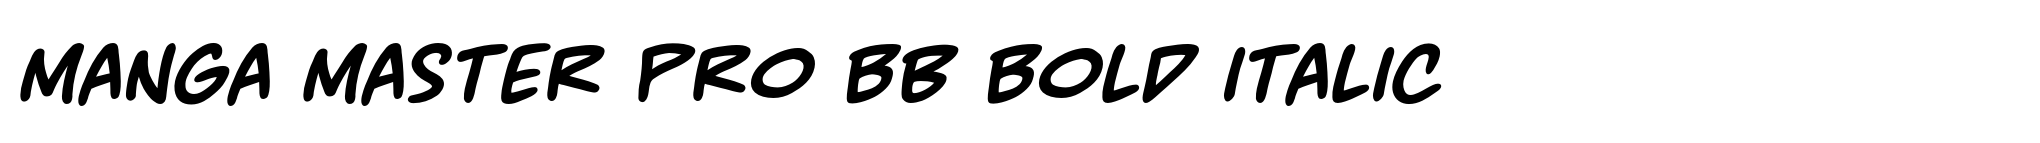 Manga Master Pro BB Bold Italic image